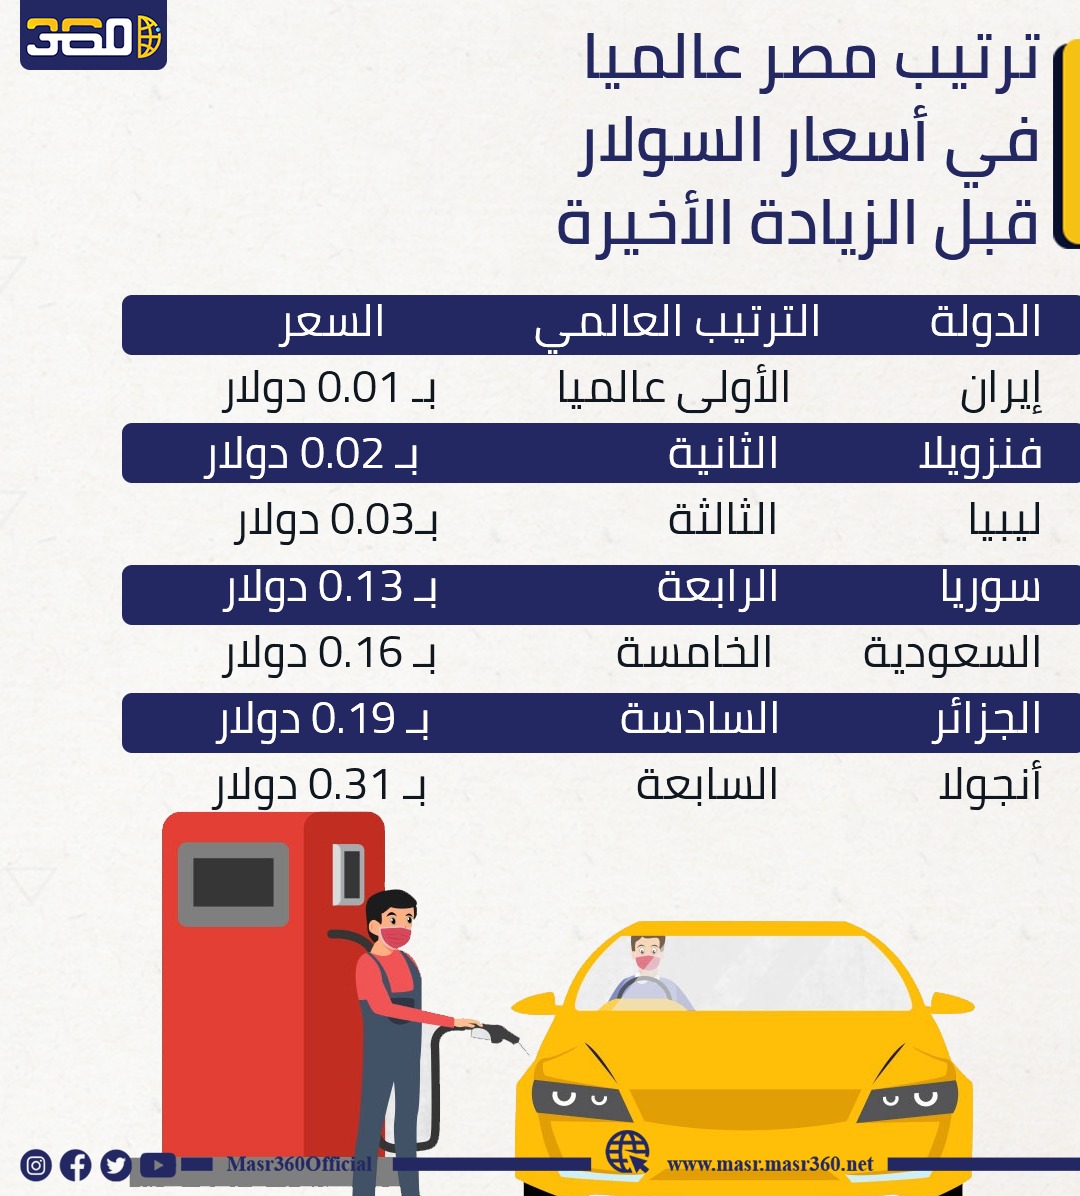 قائمة الدول الأرخص في أسعار الوقود